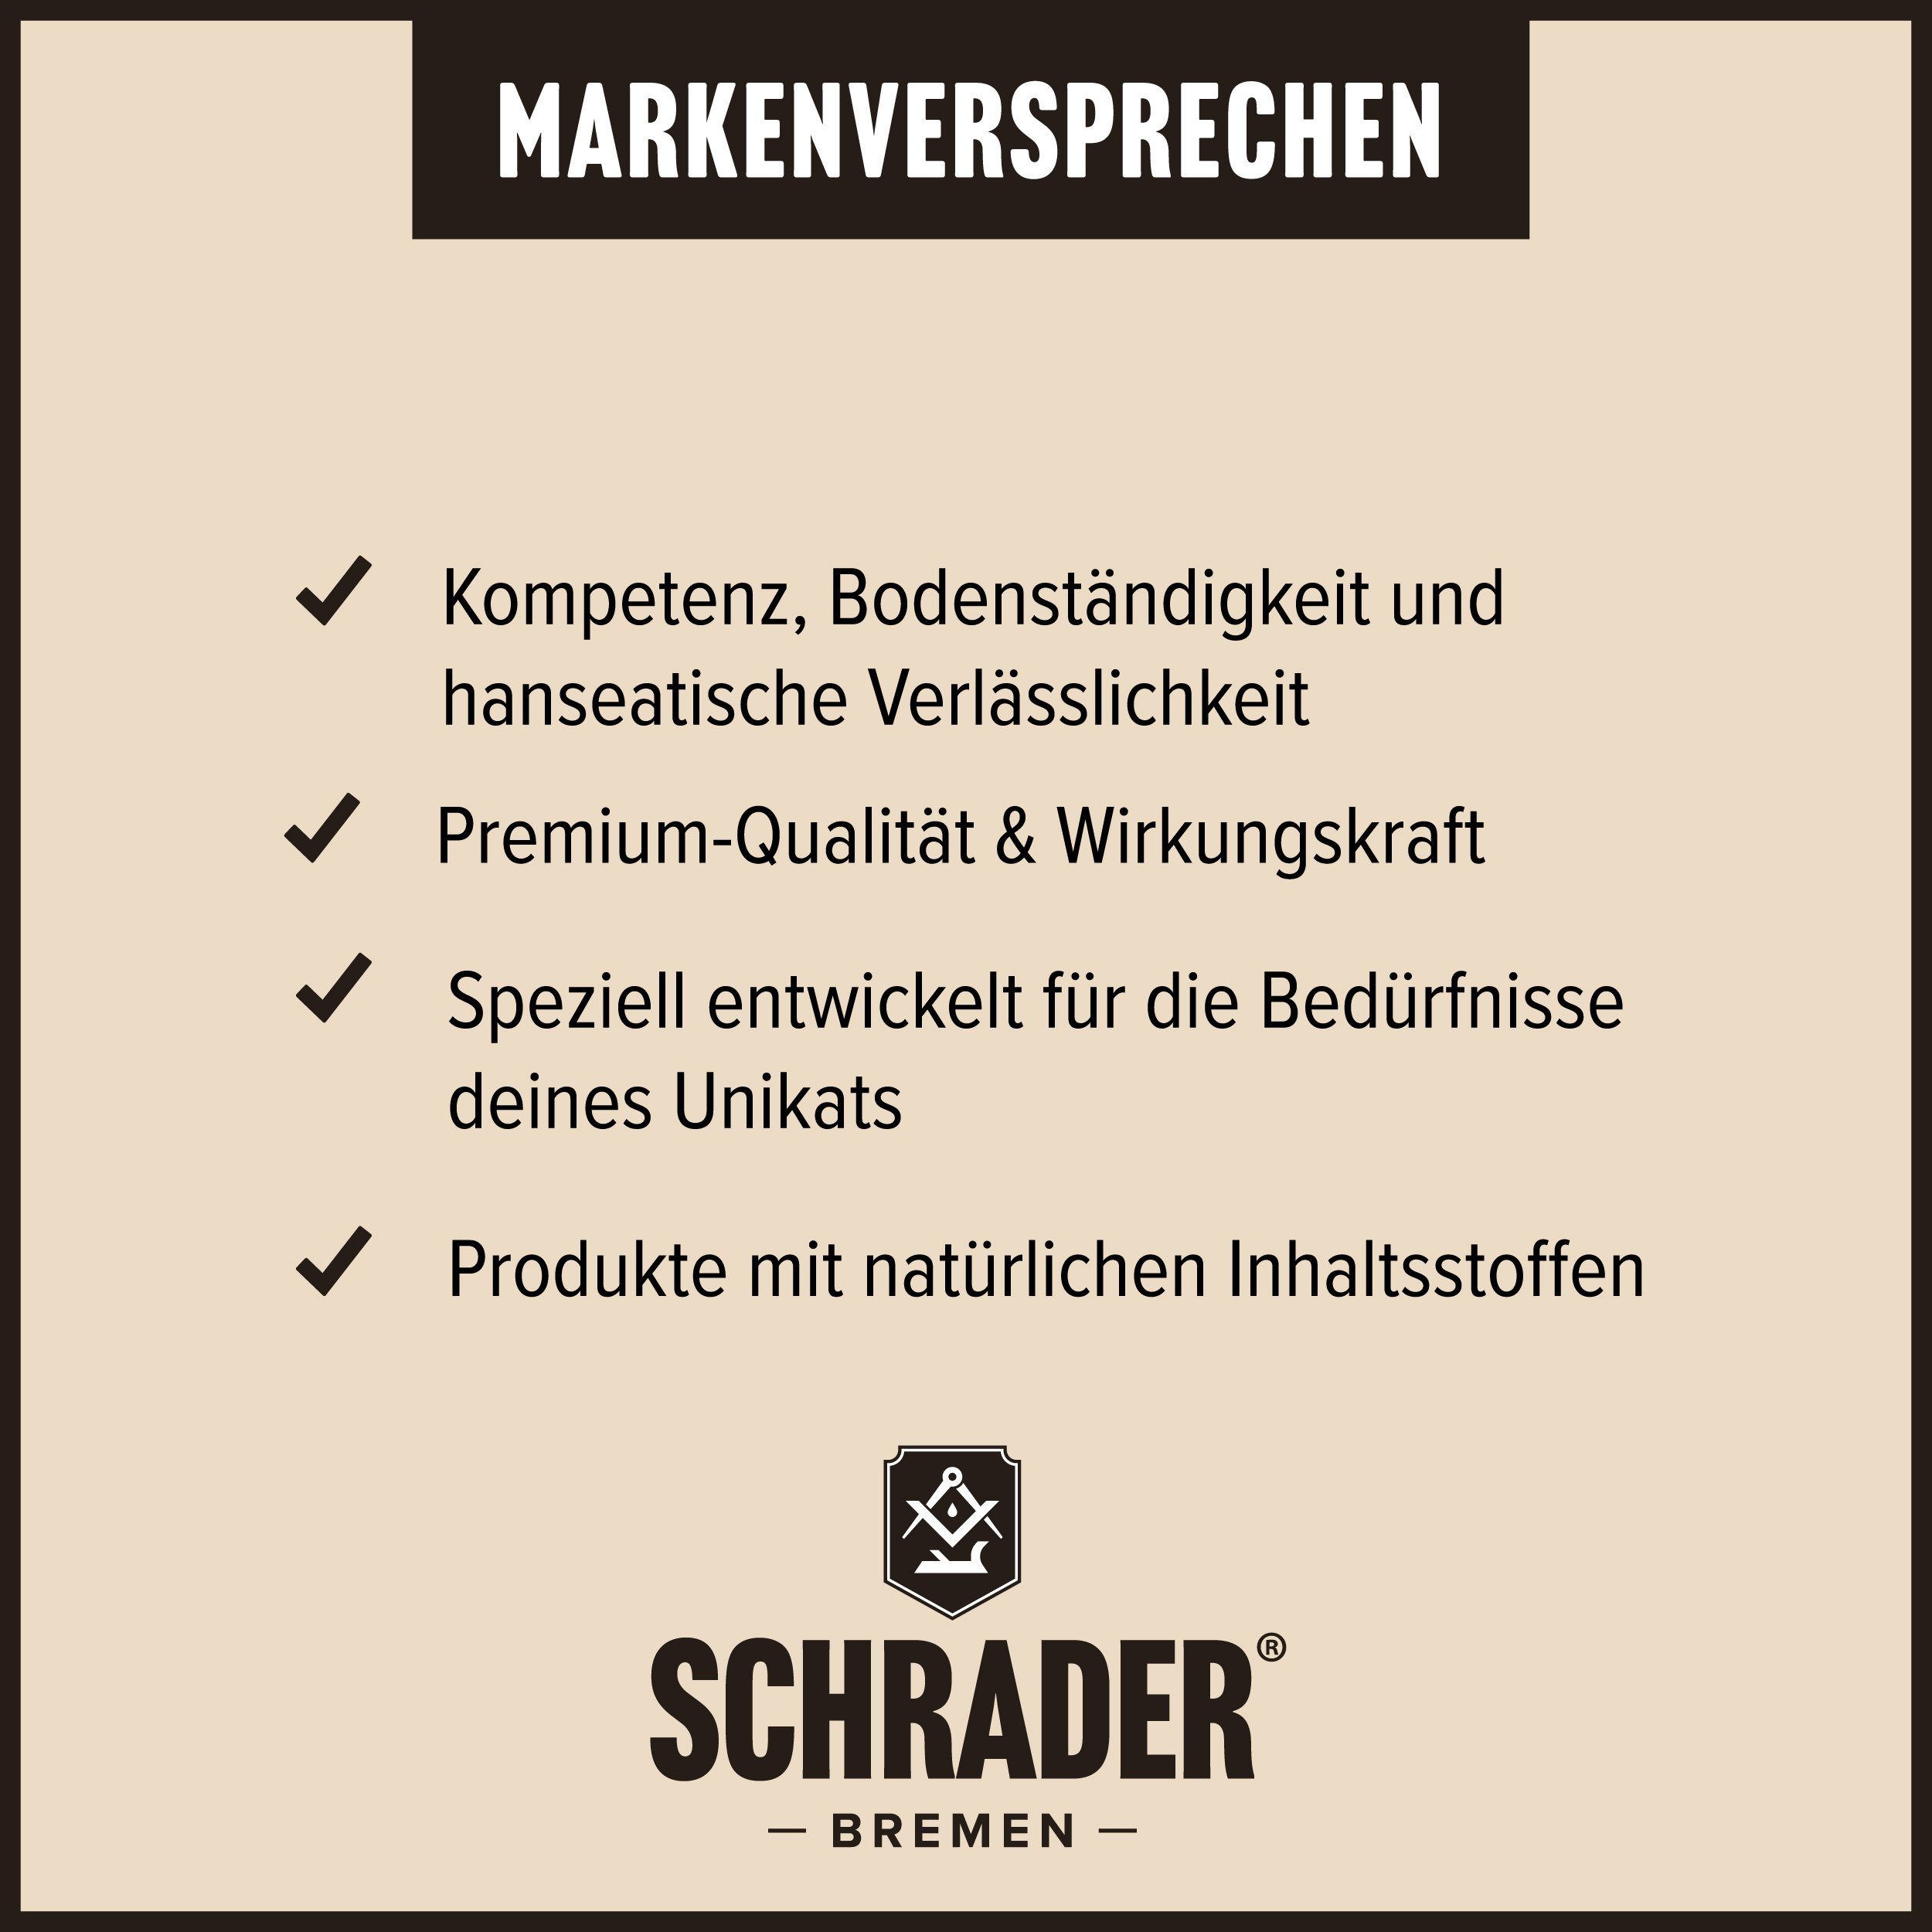 Schrader Lederpflege Made Ledermöbel - Lederreiniger - & Poliertuch und Set Germany) für Balsam (Reiniger, in Lederkleidung